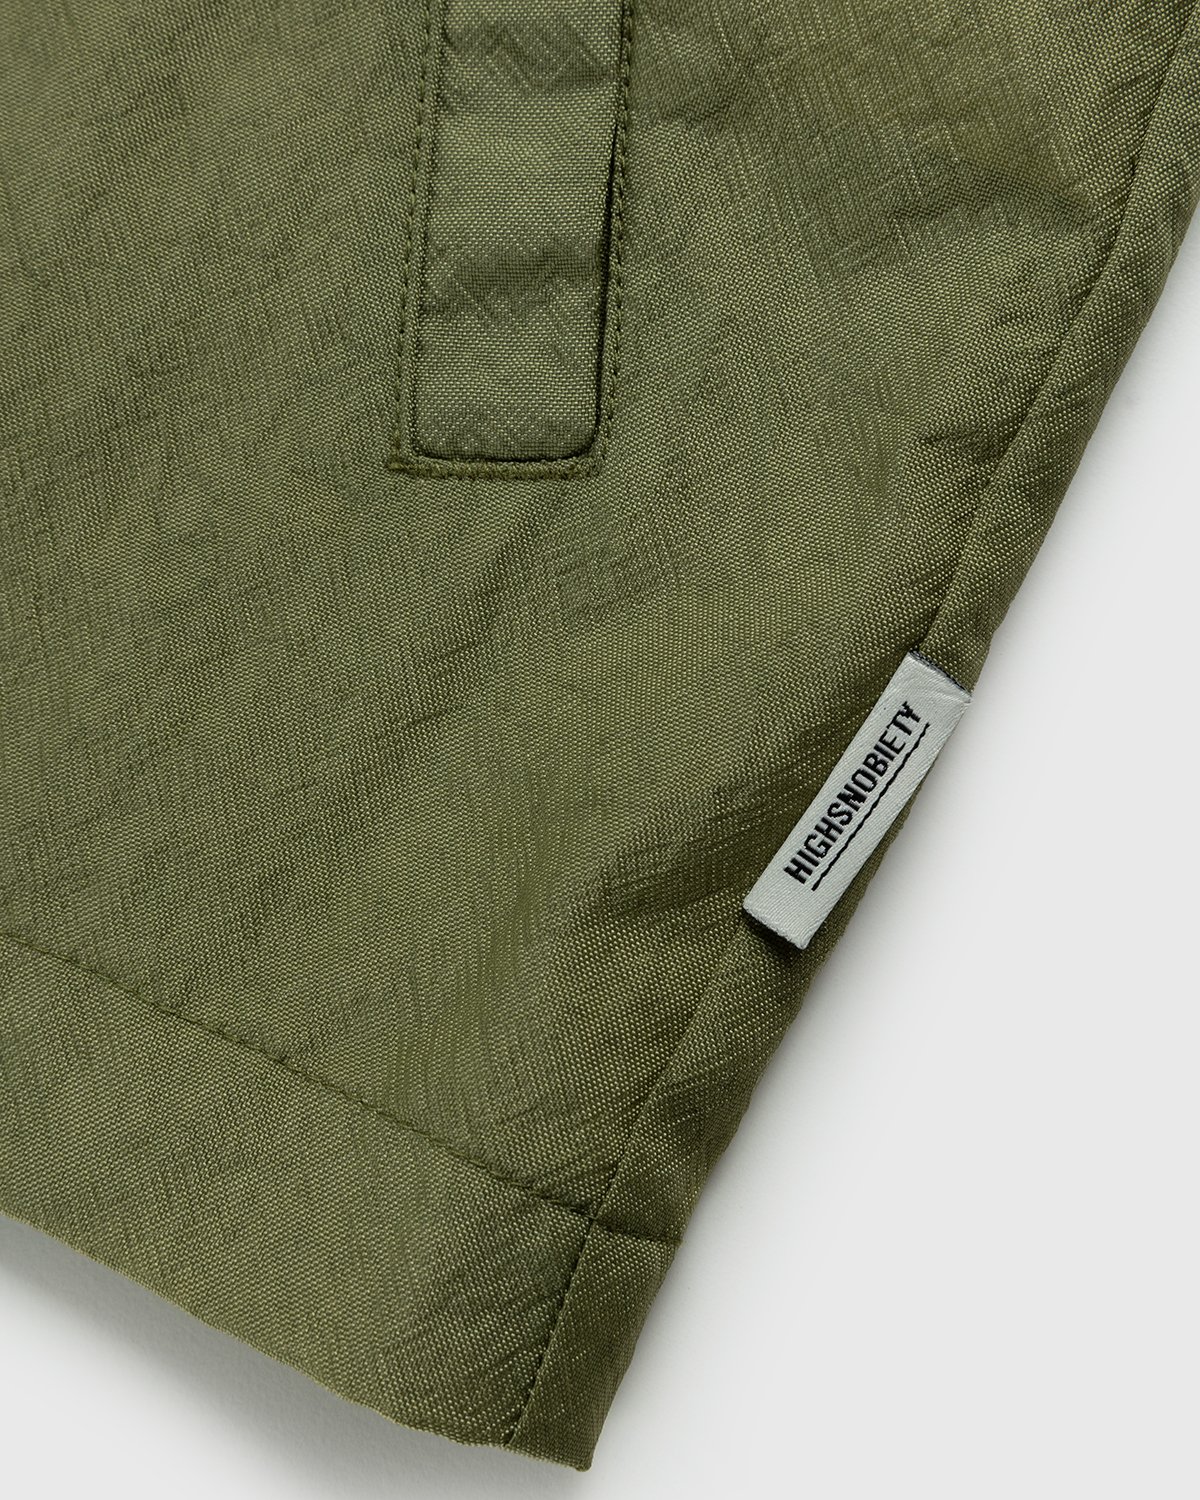 Highsnobiety - Stonewashed Nylon Coach Jacket Olive - Clothing - Green - Image 4